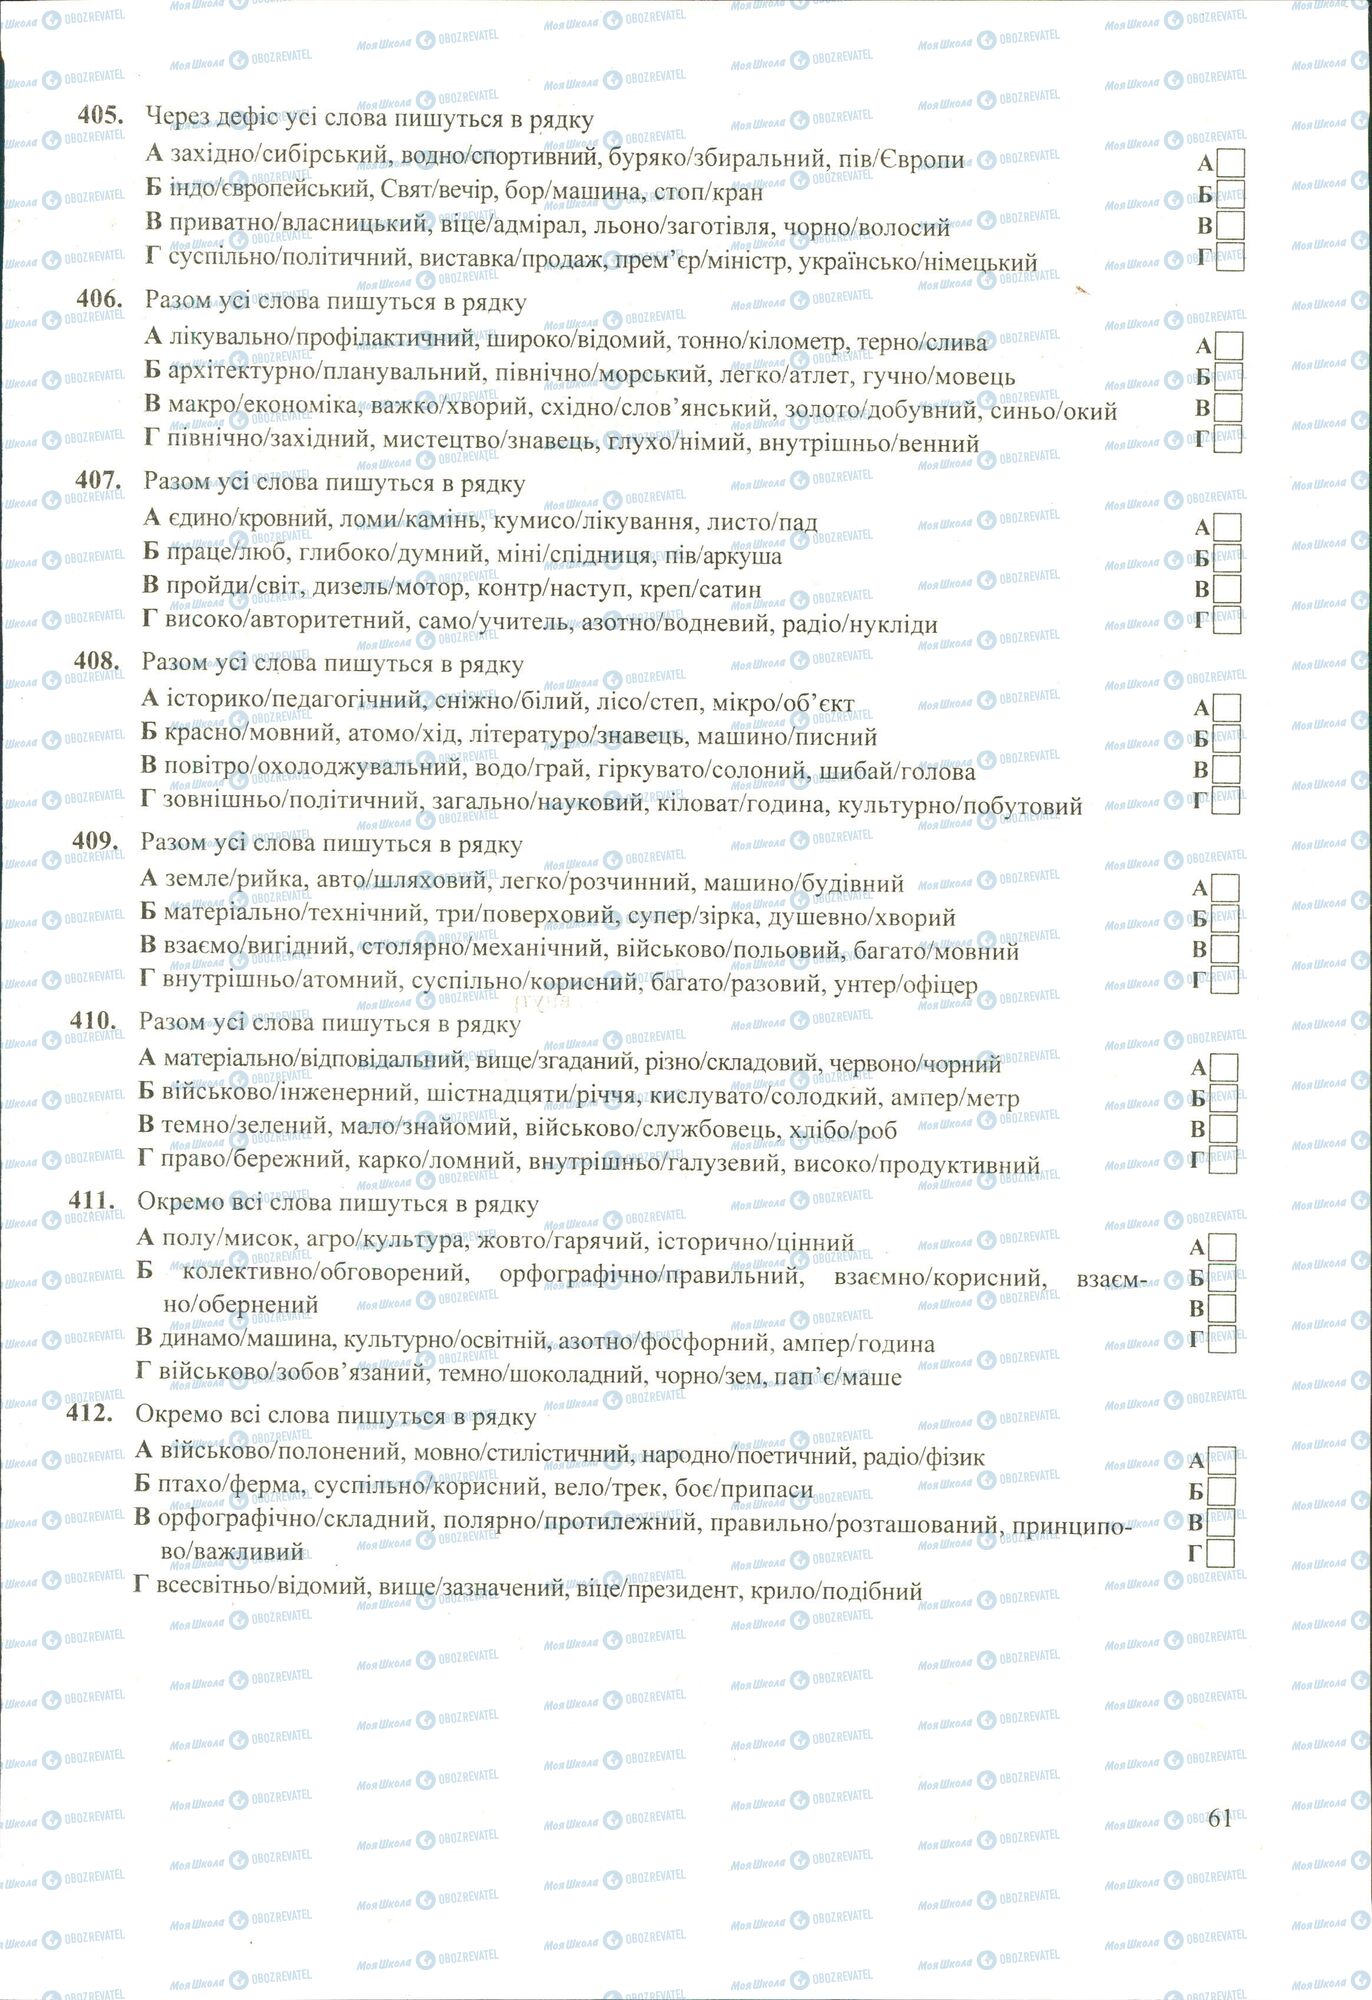 ЗНО Укр мова 11 класс страница 405-412